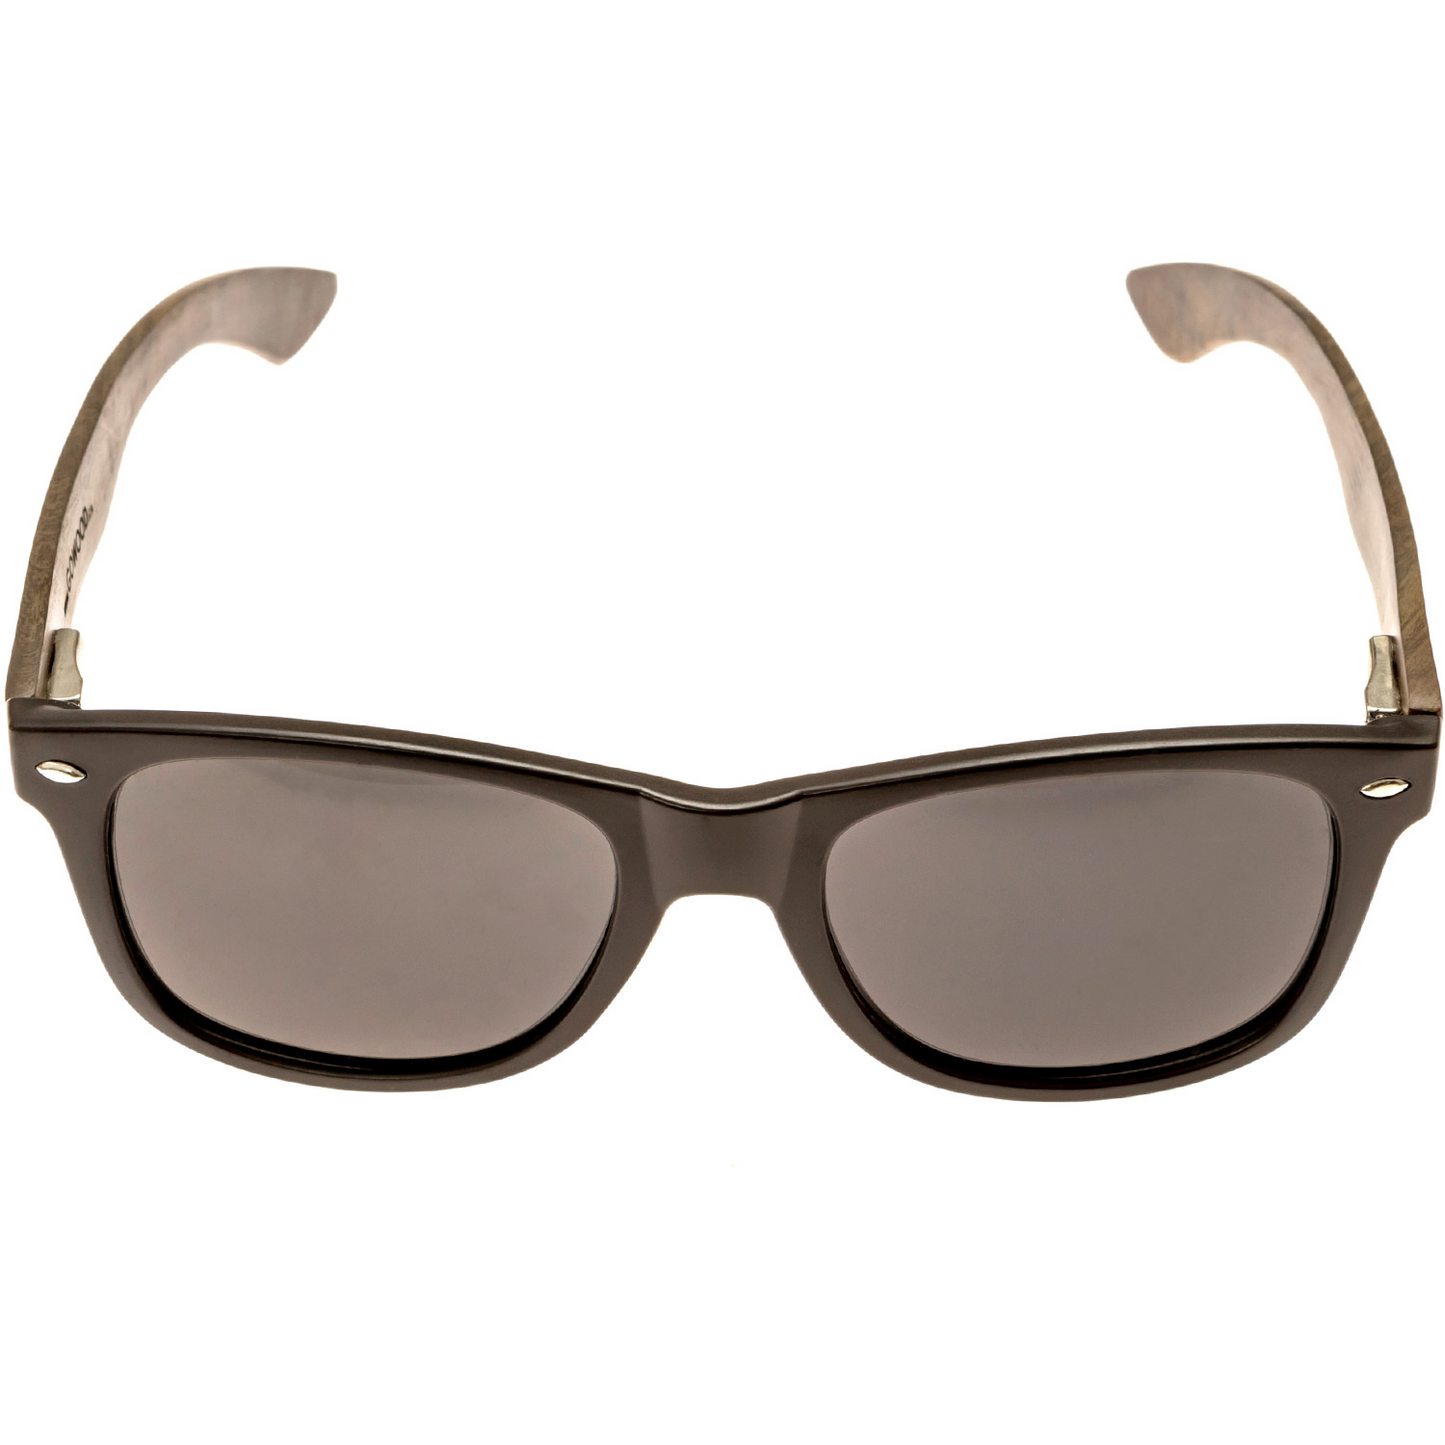 Ebony wood classic style sunglasses with black polarized lenses